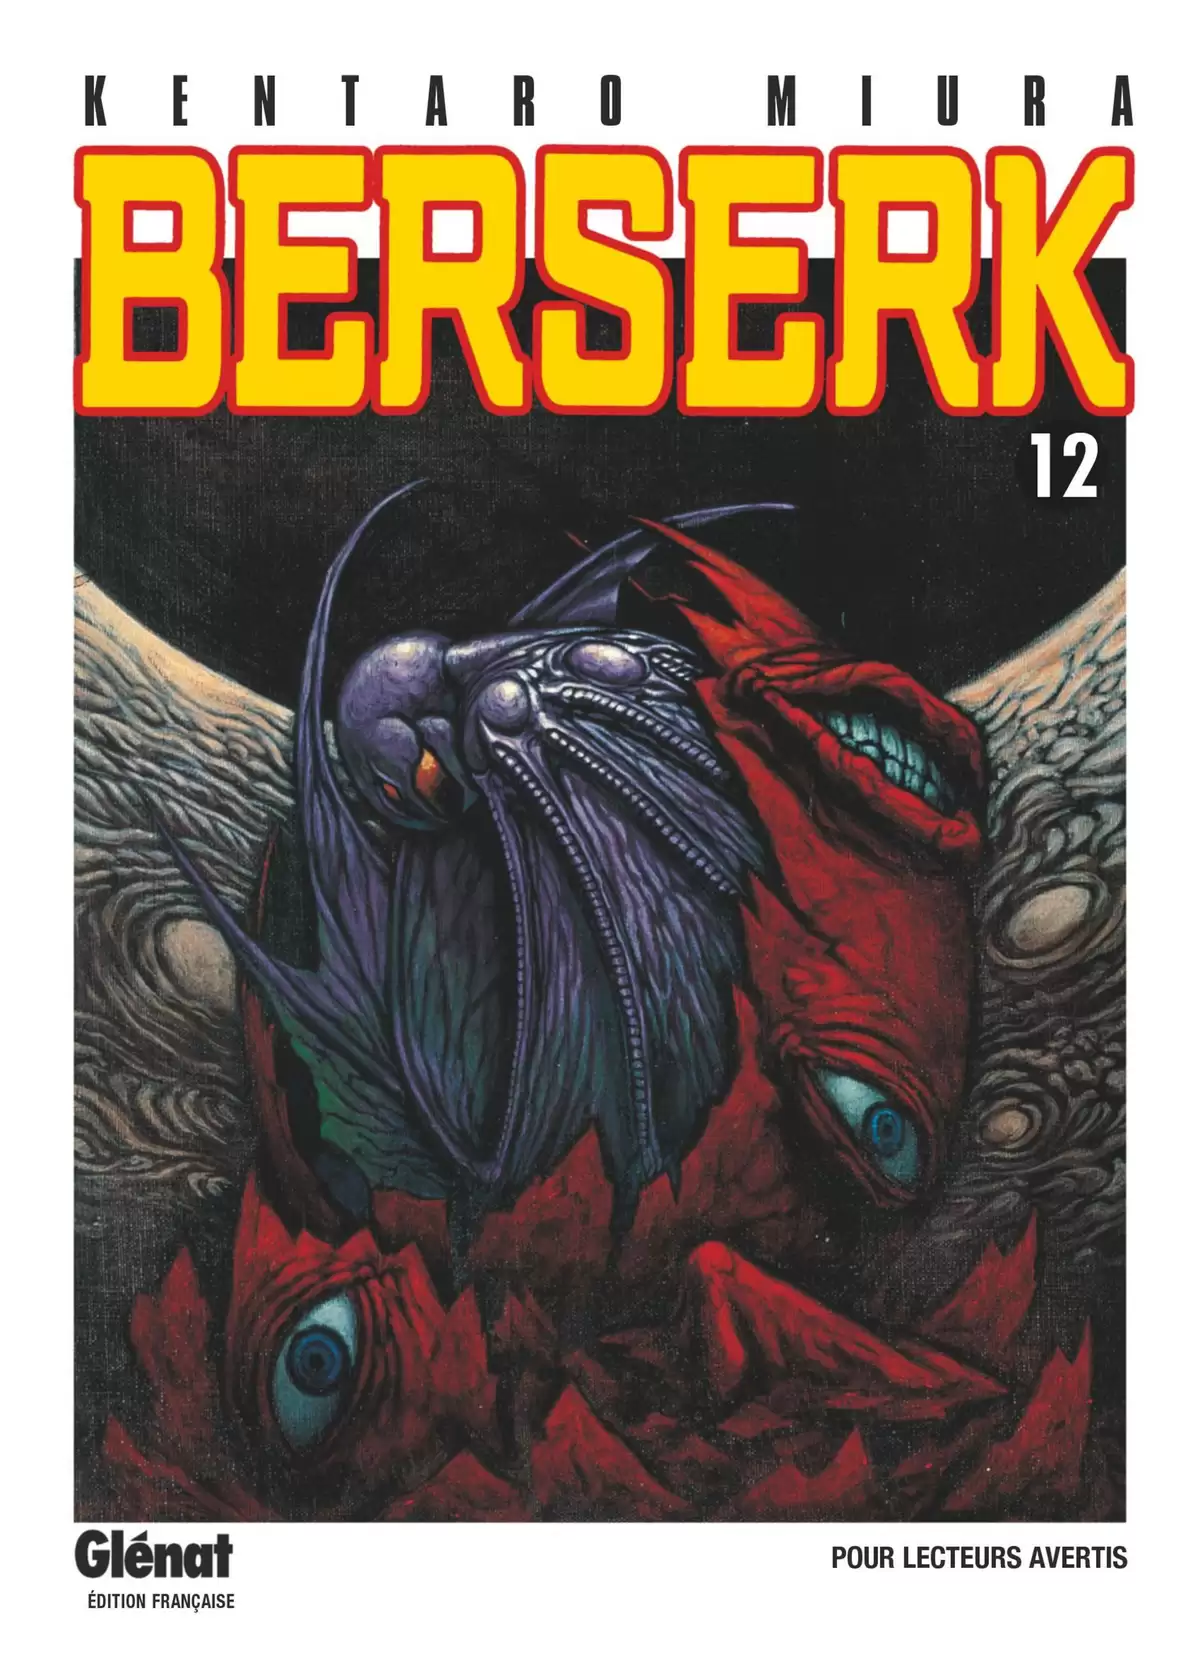 Berserk Volume 12 page 1